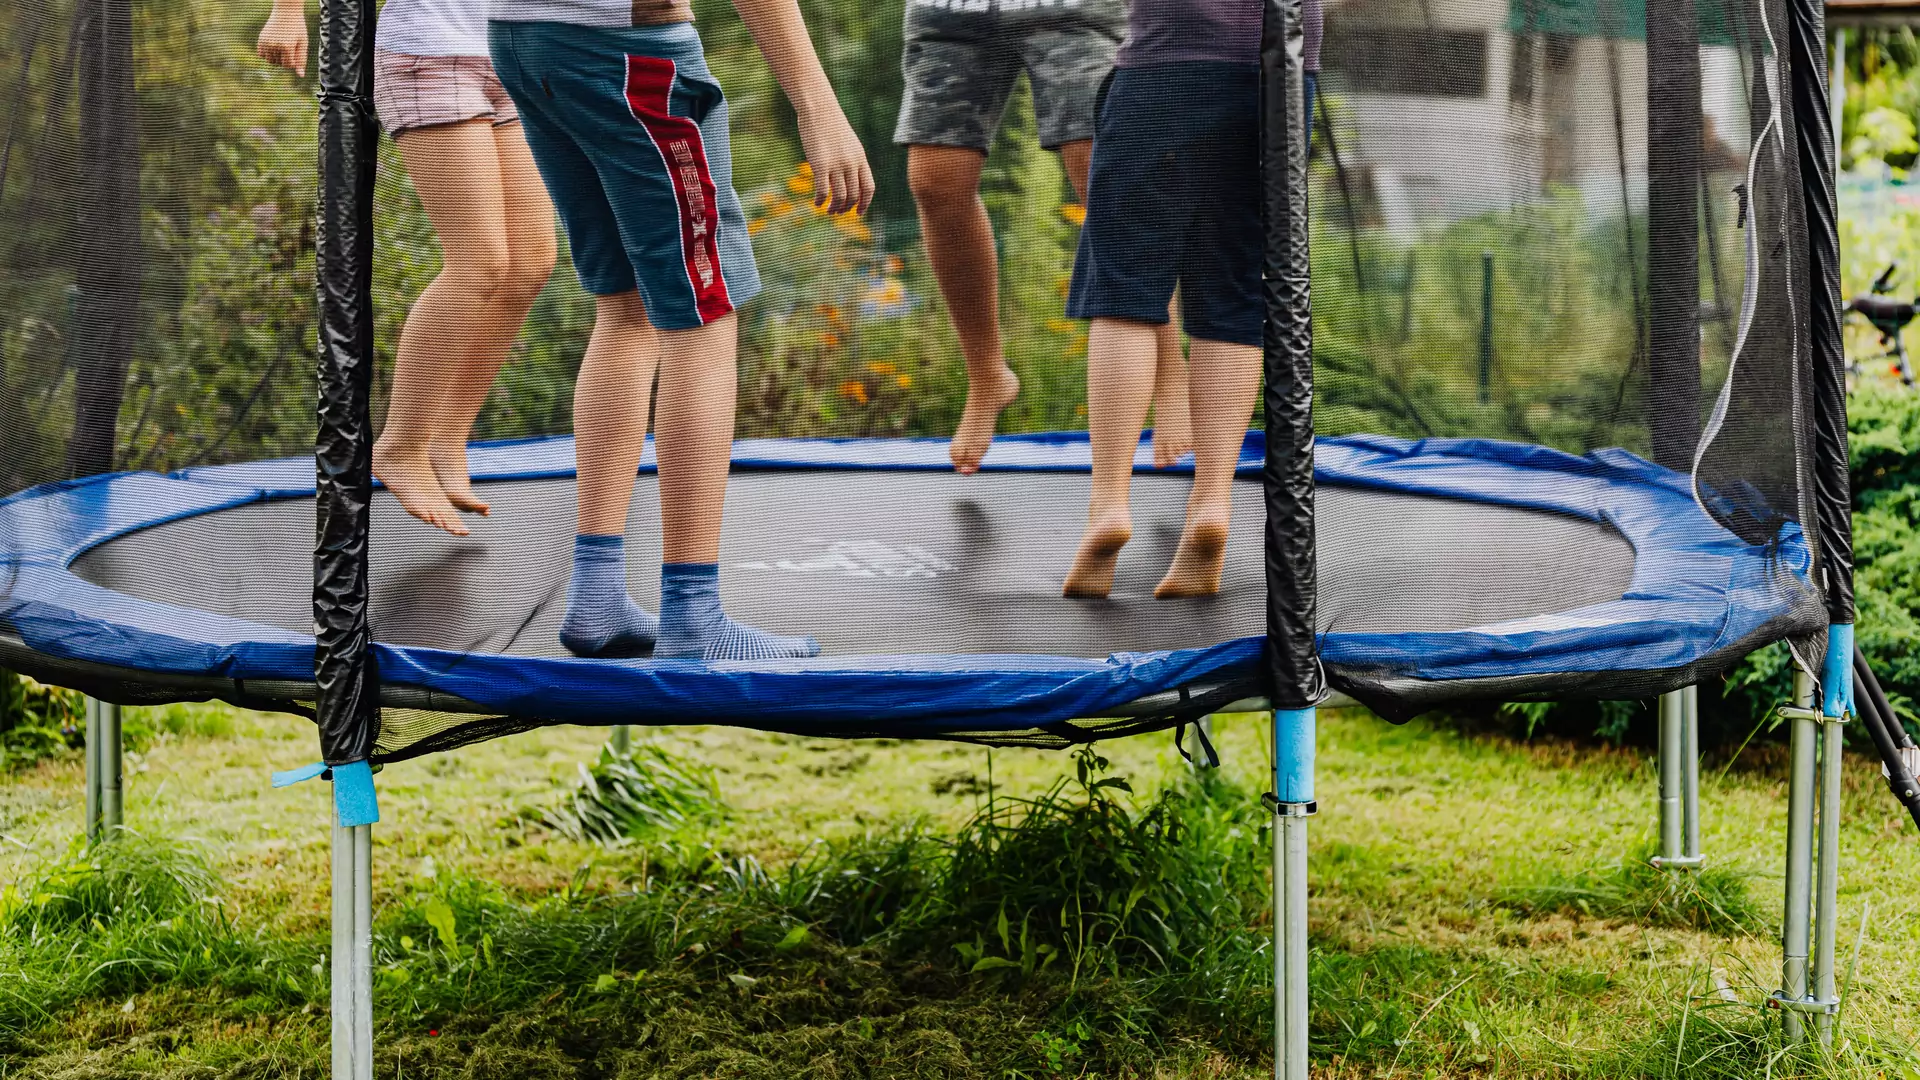 Trampolina ogrodowa — zapewni świetną zabawę nie tylko najmłodszym